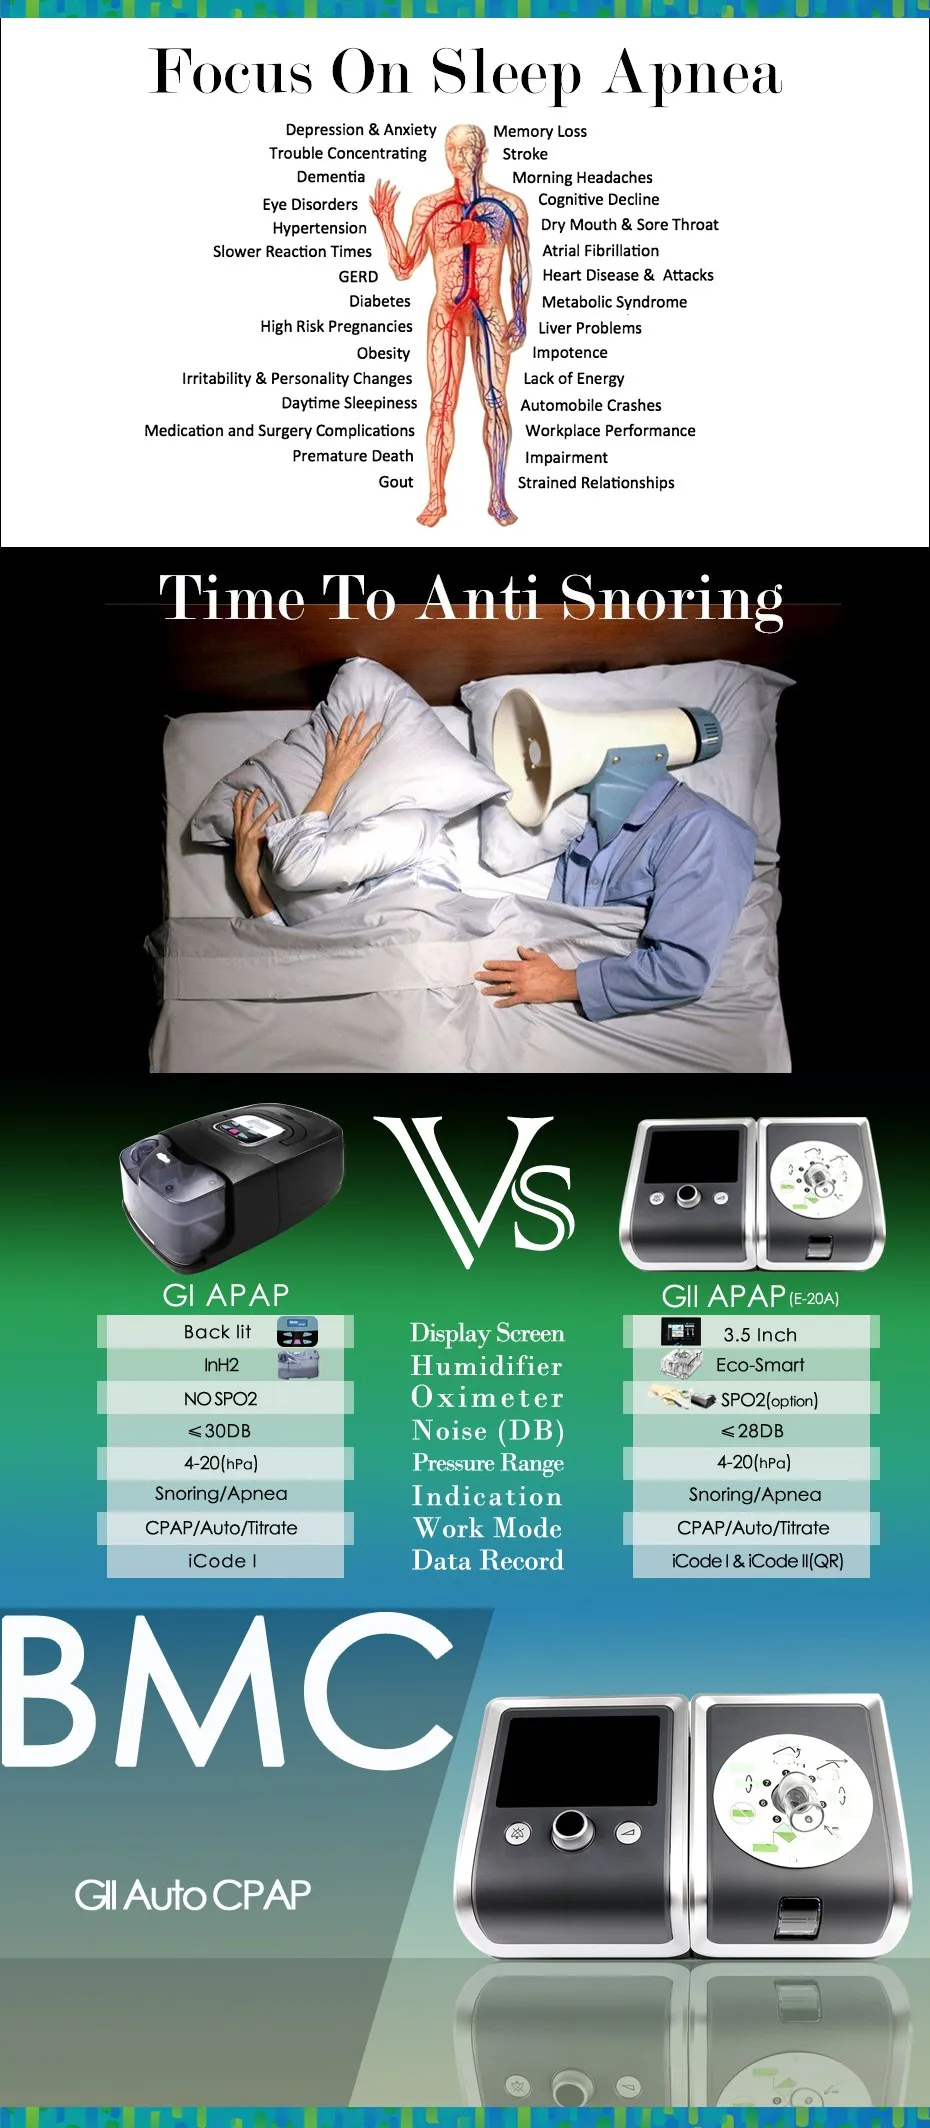 Doctodd GII APAP лучший FDA Авто CPAP дыхательное устройство против храпа апноэ сна OSAS APAP AutoCPAP с бесплатными масками и сумкой